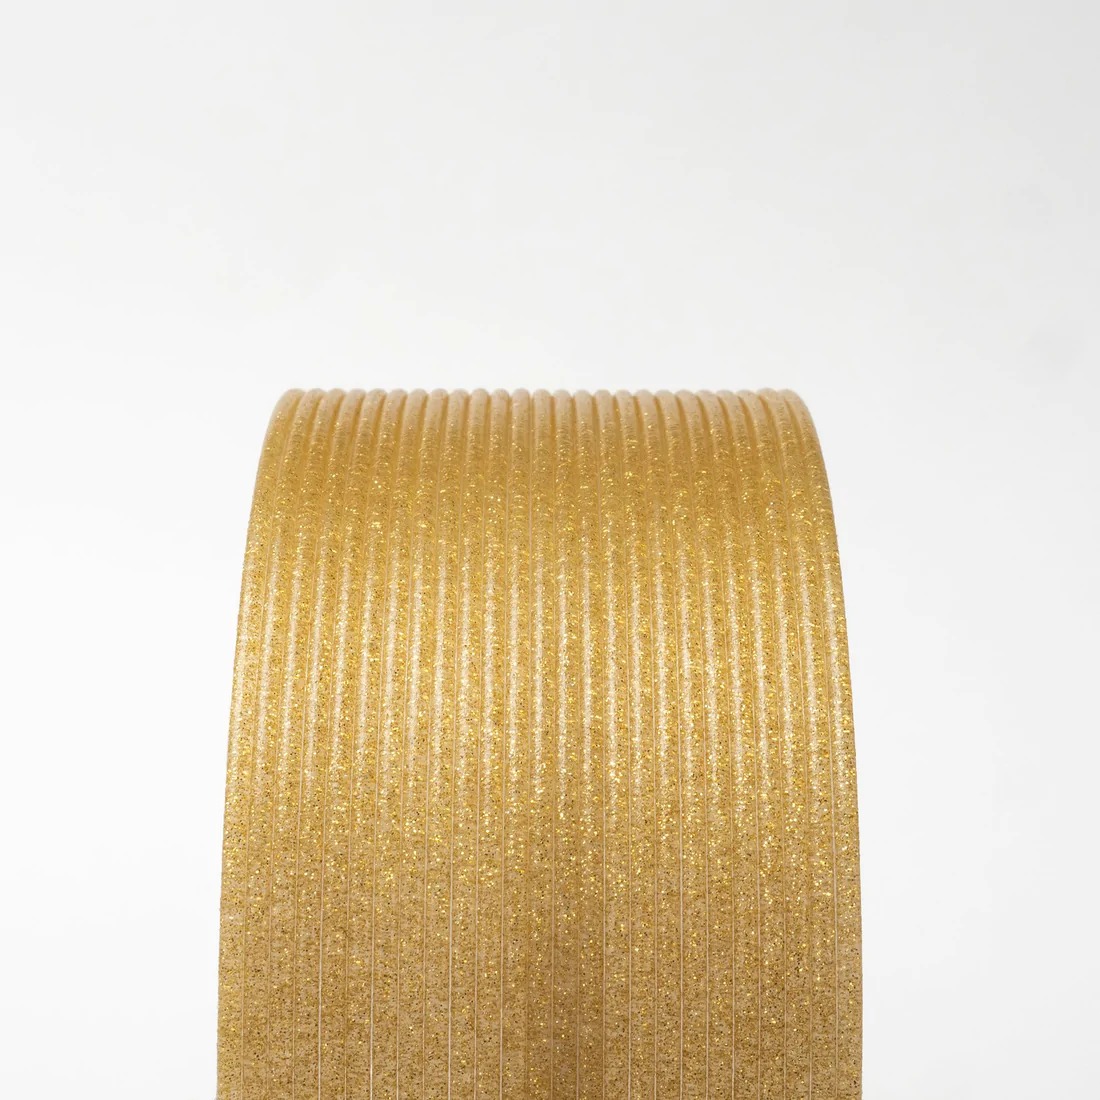 Gold Dust HTPLA  Proto pasta 1.75mm 3D FilaPrint filament